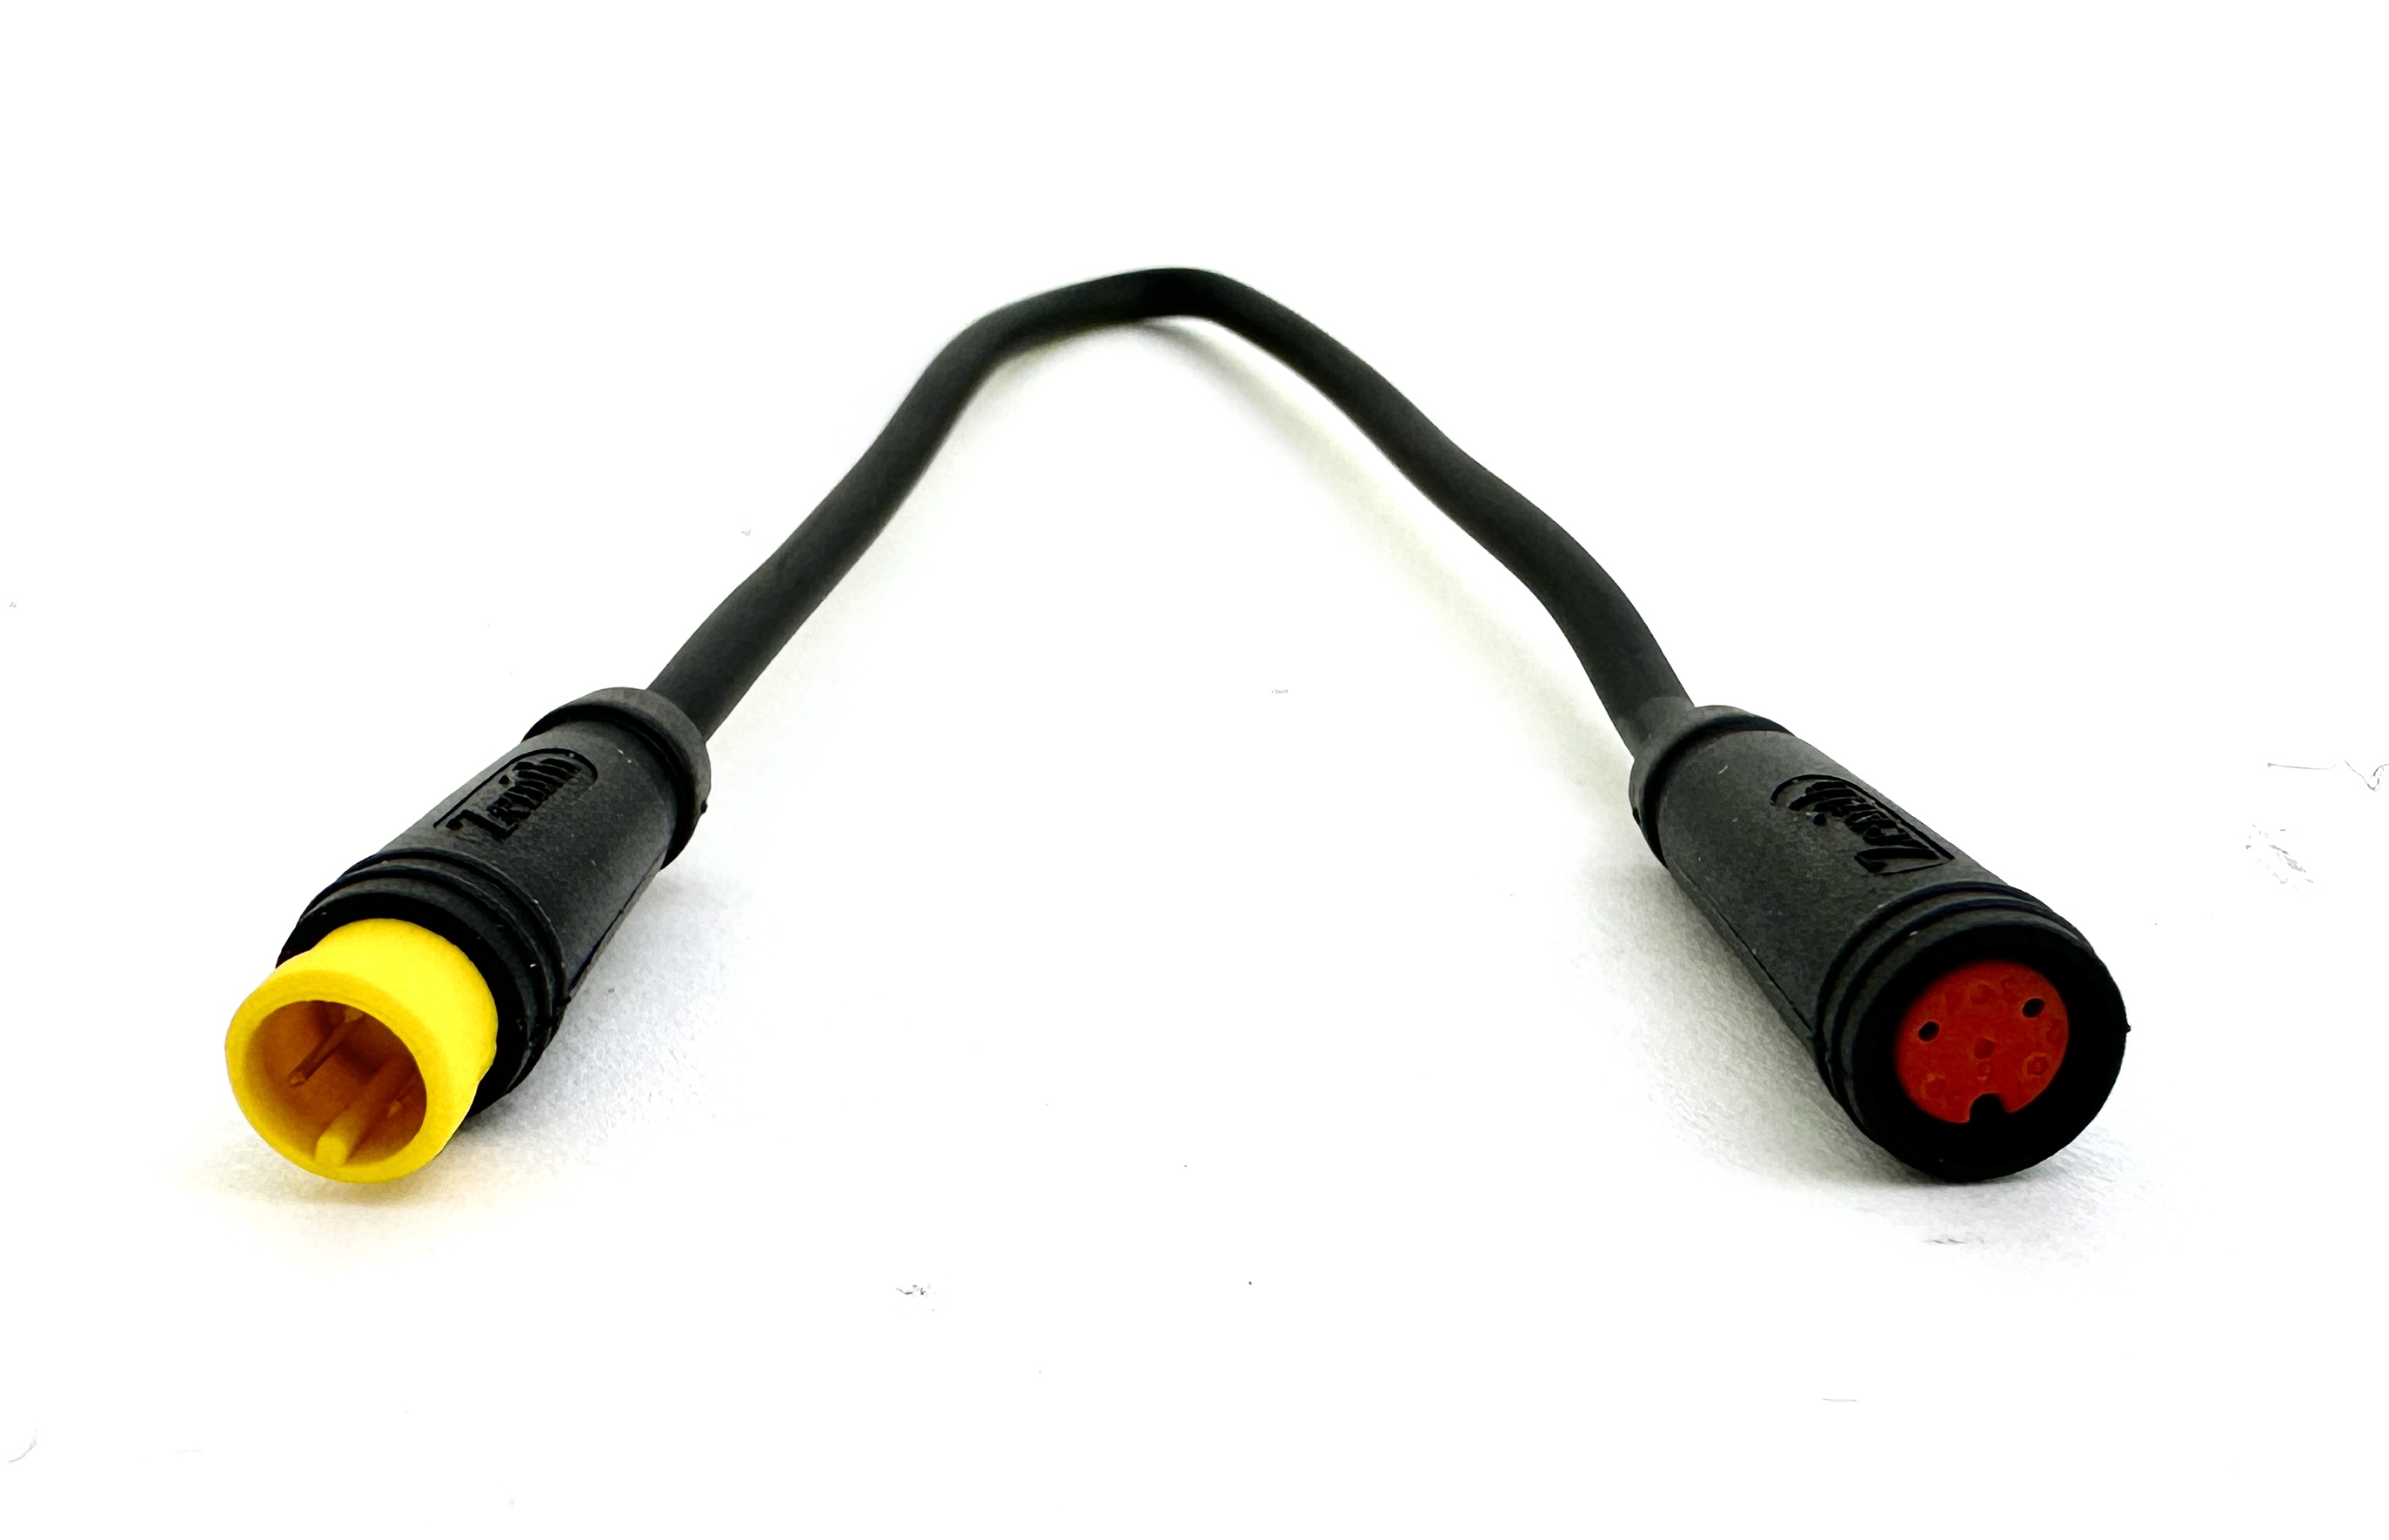 HIGO / Julet cable adaptador 19,5 cm para Ebike, 2 PIN rojo a 3 PIN amarillo